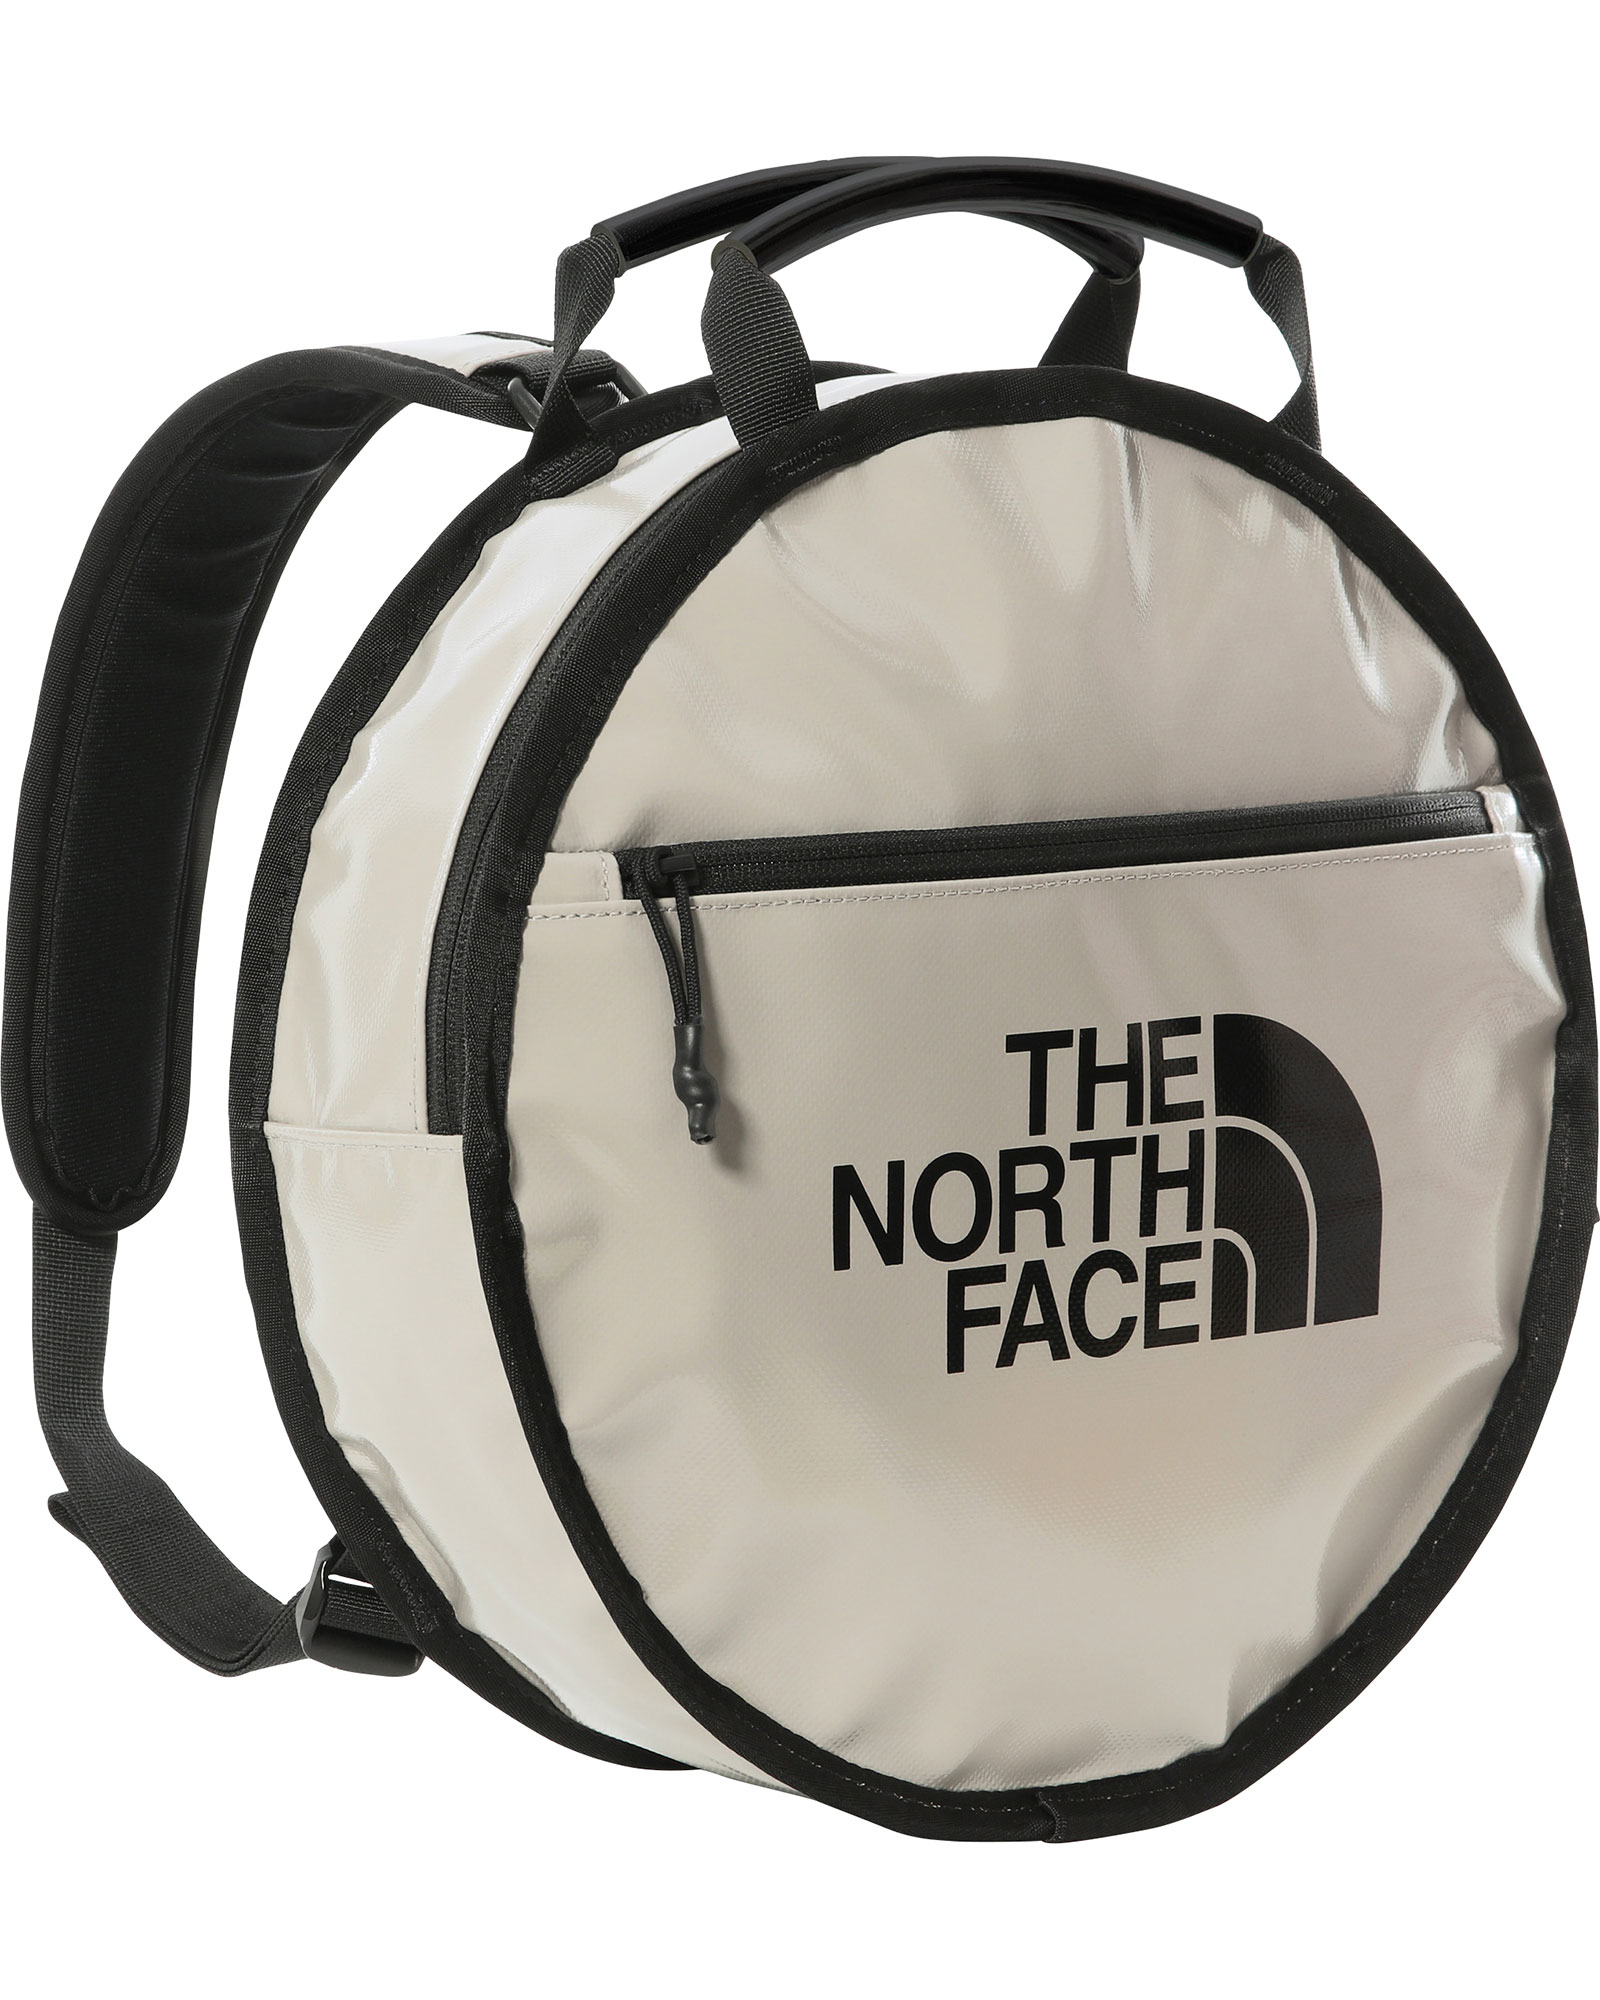 The North Face Base Camp Circle Bag - Mineral Grey/TNF Black